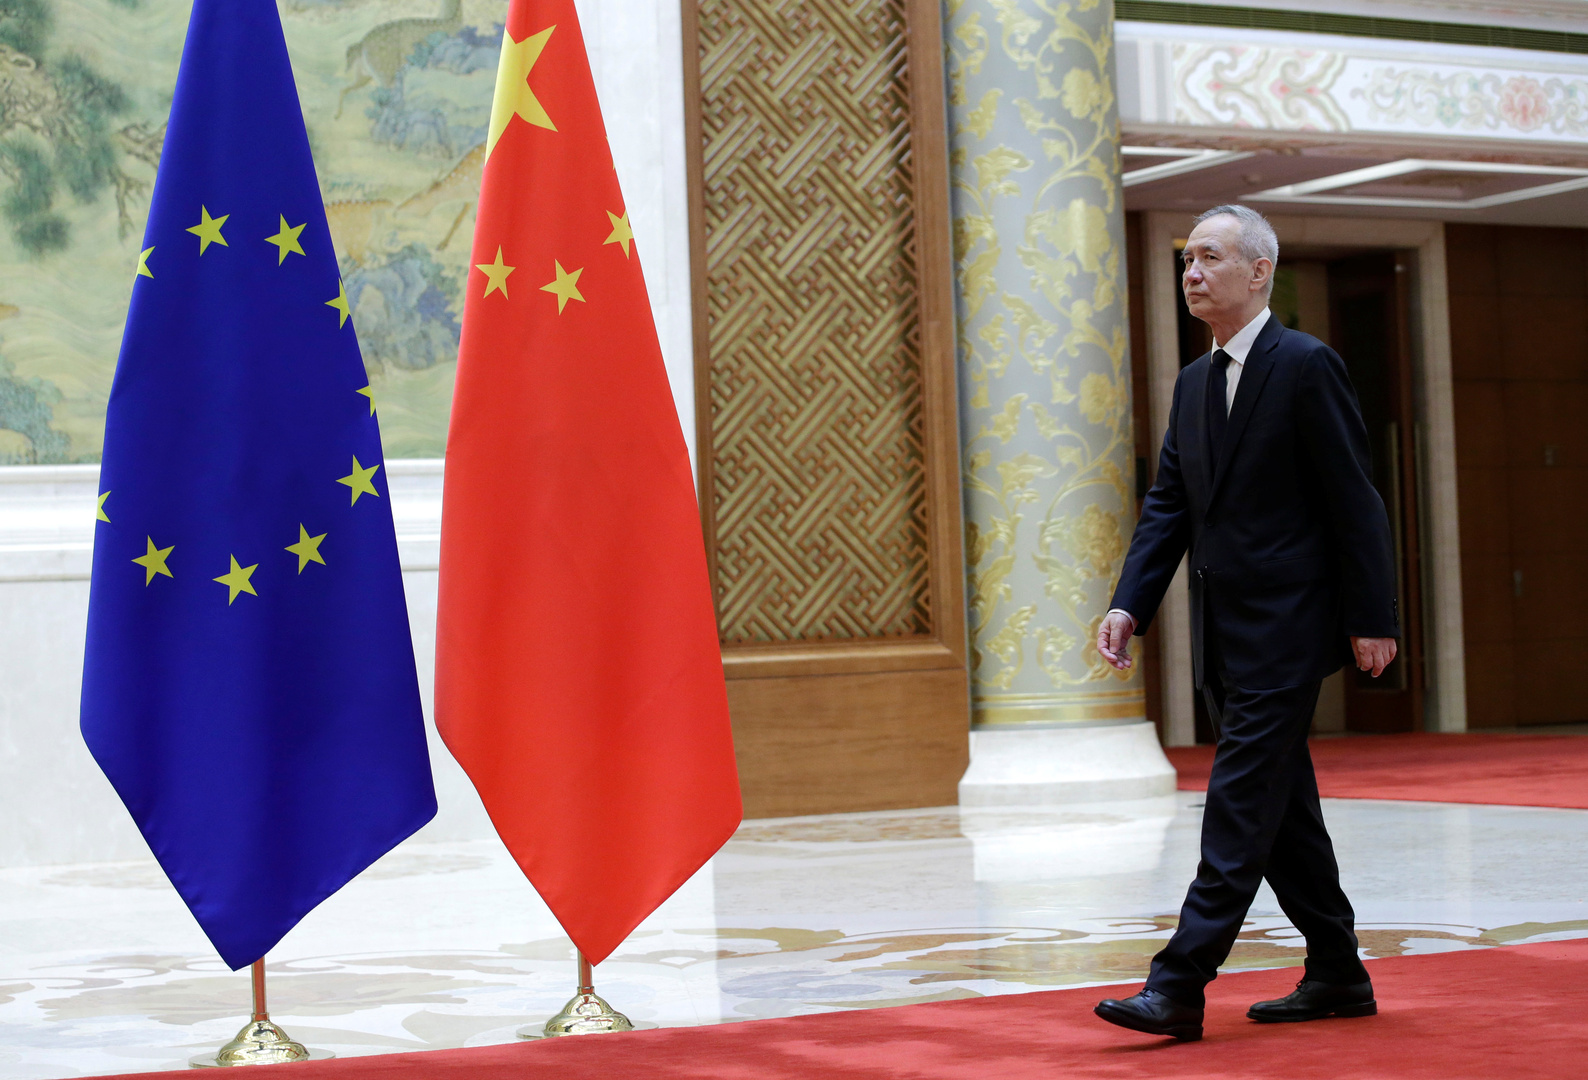 الاتحاد الأوروبي يعلق على حظر القنوات المتبادل بين الصين وبريطانيا